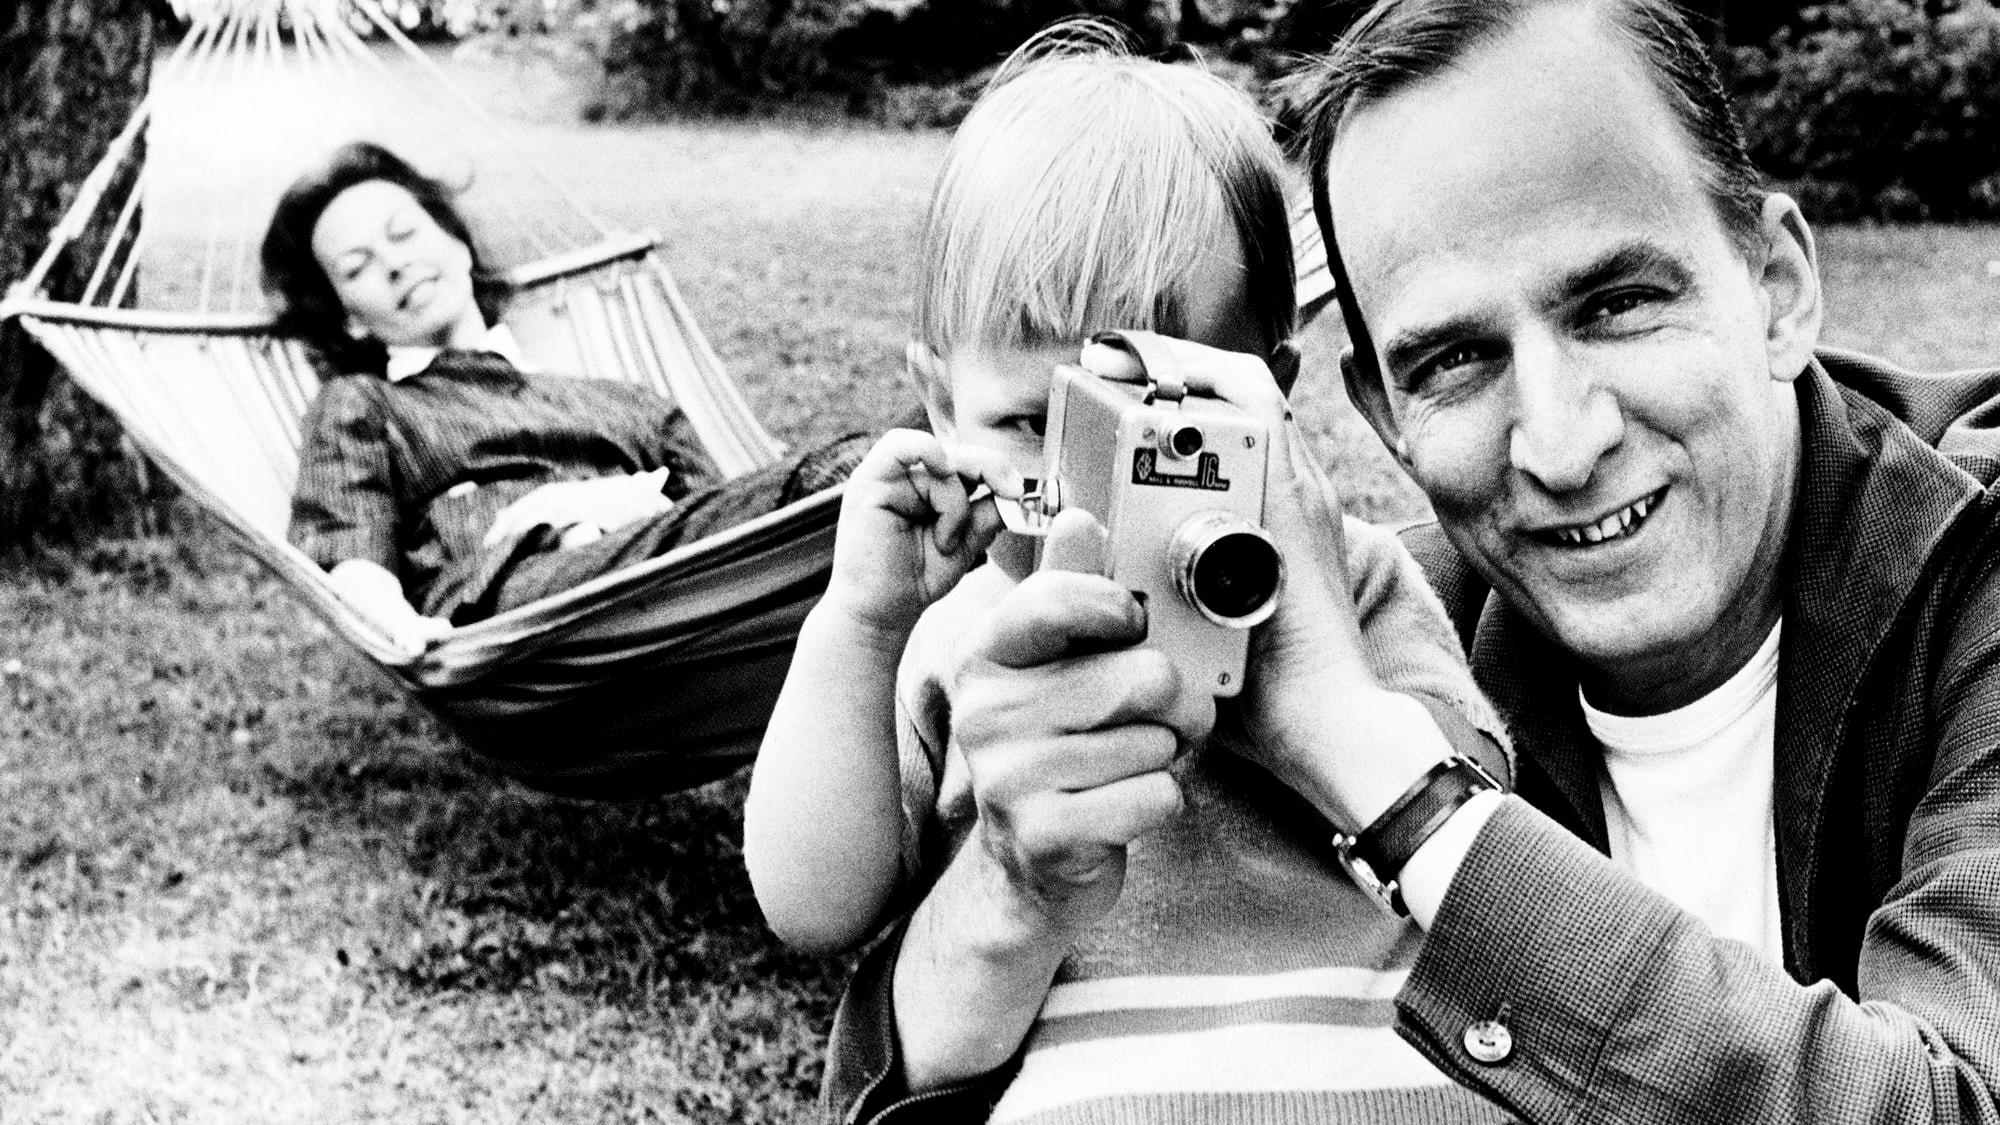 Searching for Ingmar Bergman backdrop